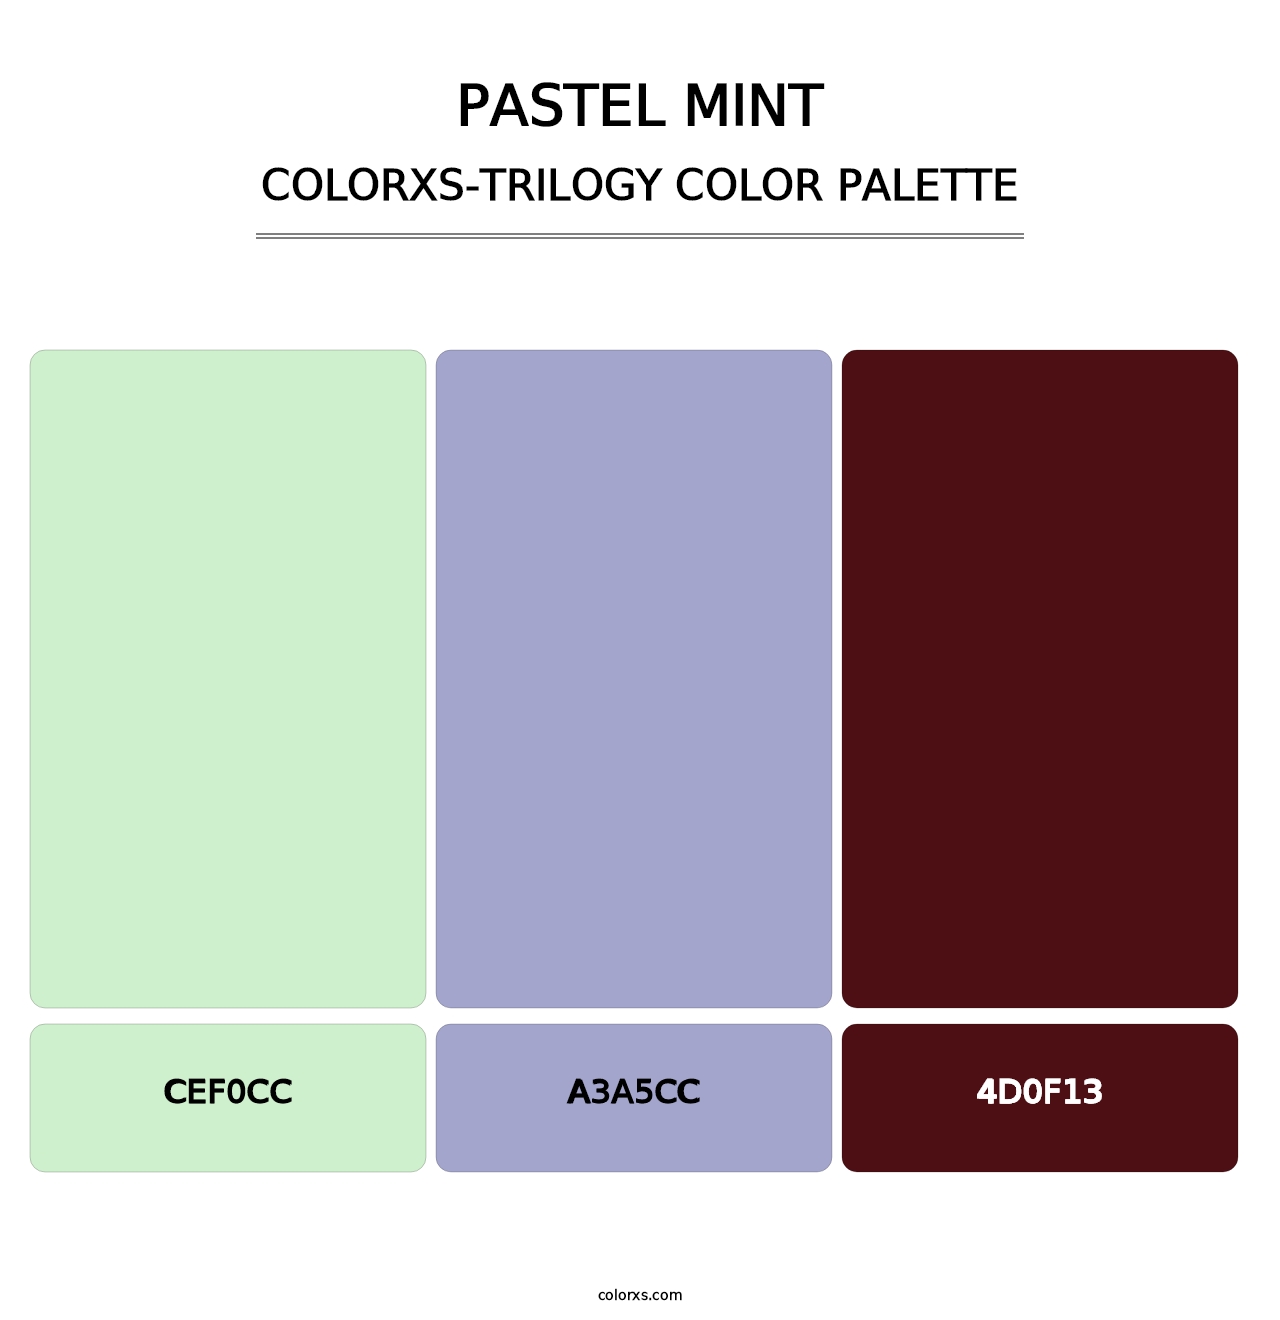 Pastel Mint - Colorxs Trilogy Palette